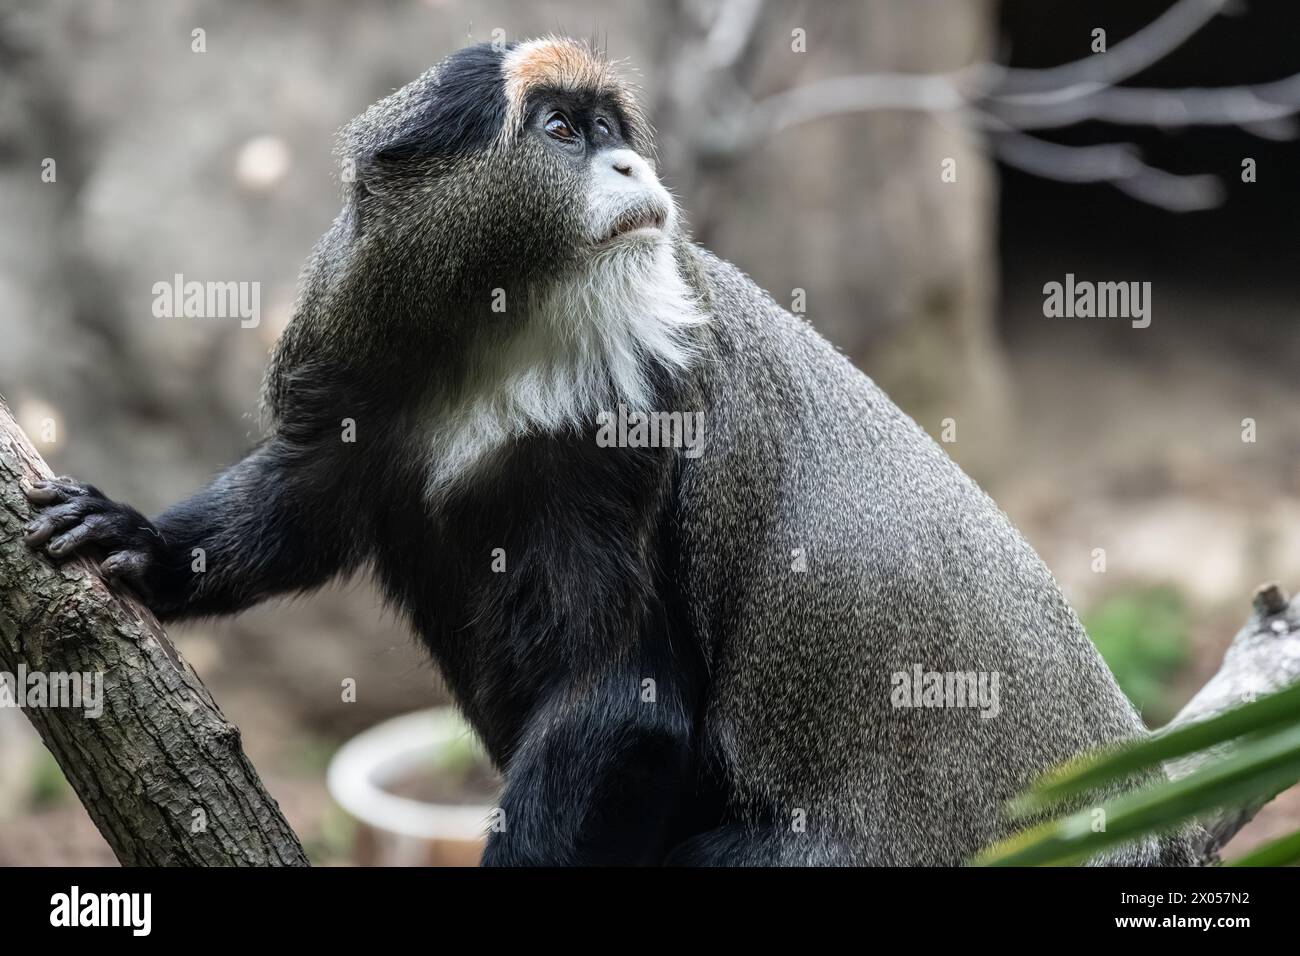 Le singe de Brazza (Cercopithecus negectus), primate d'Afrique centrale, au zoo de Birmingham à Birmingham, Alabama. (ÉTATS-UNIS) Banque D'Images